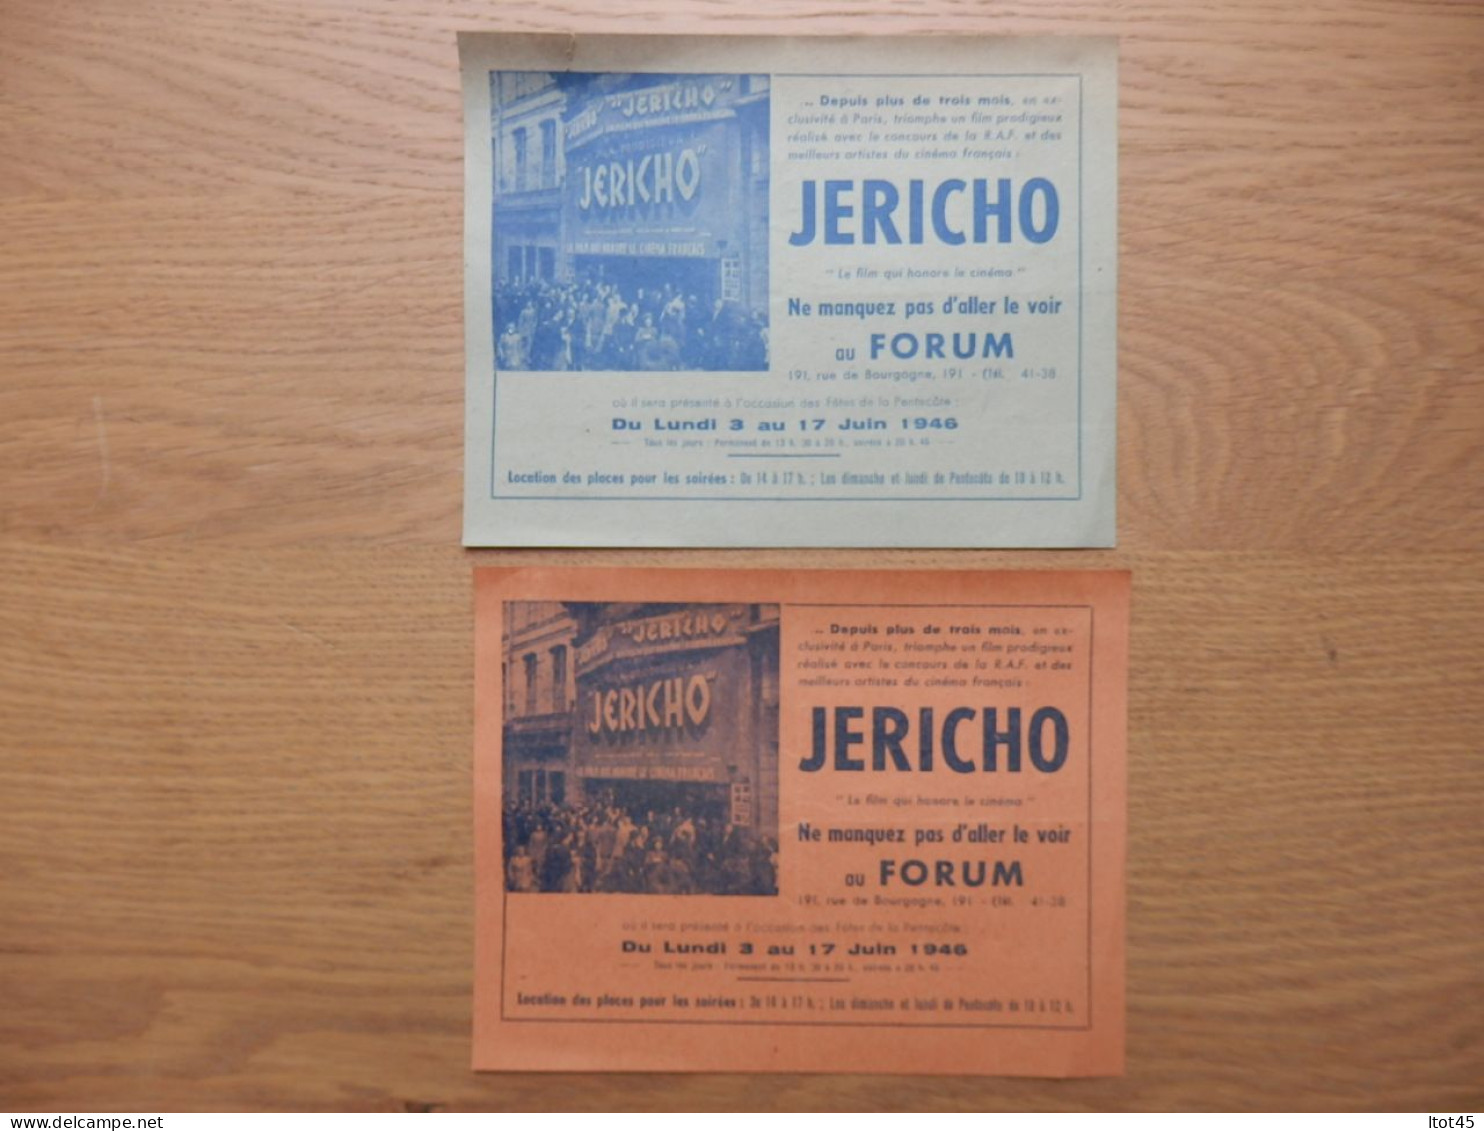 LOT DE 2 DOCUMENTS PUBLICITAIRES FILM JERICHO DU 03 AU 17 JUIN 1946 - Publicités